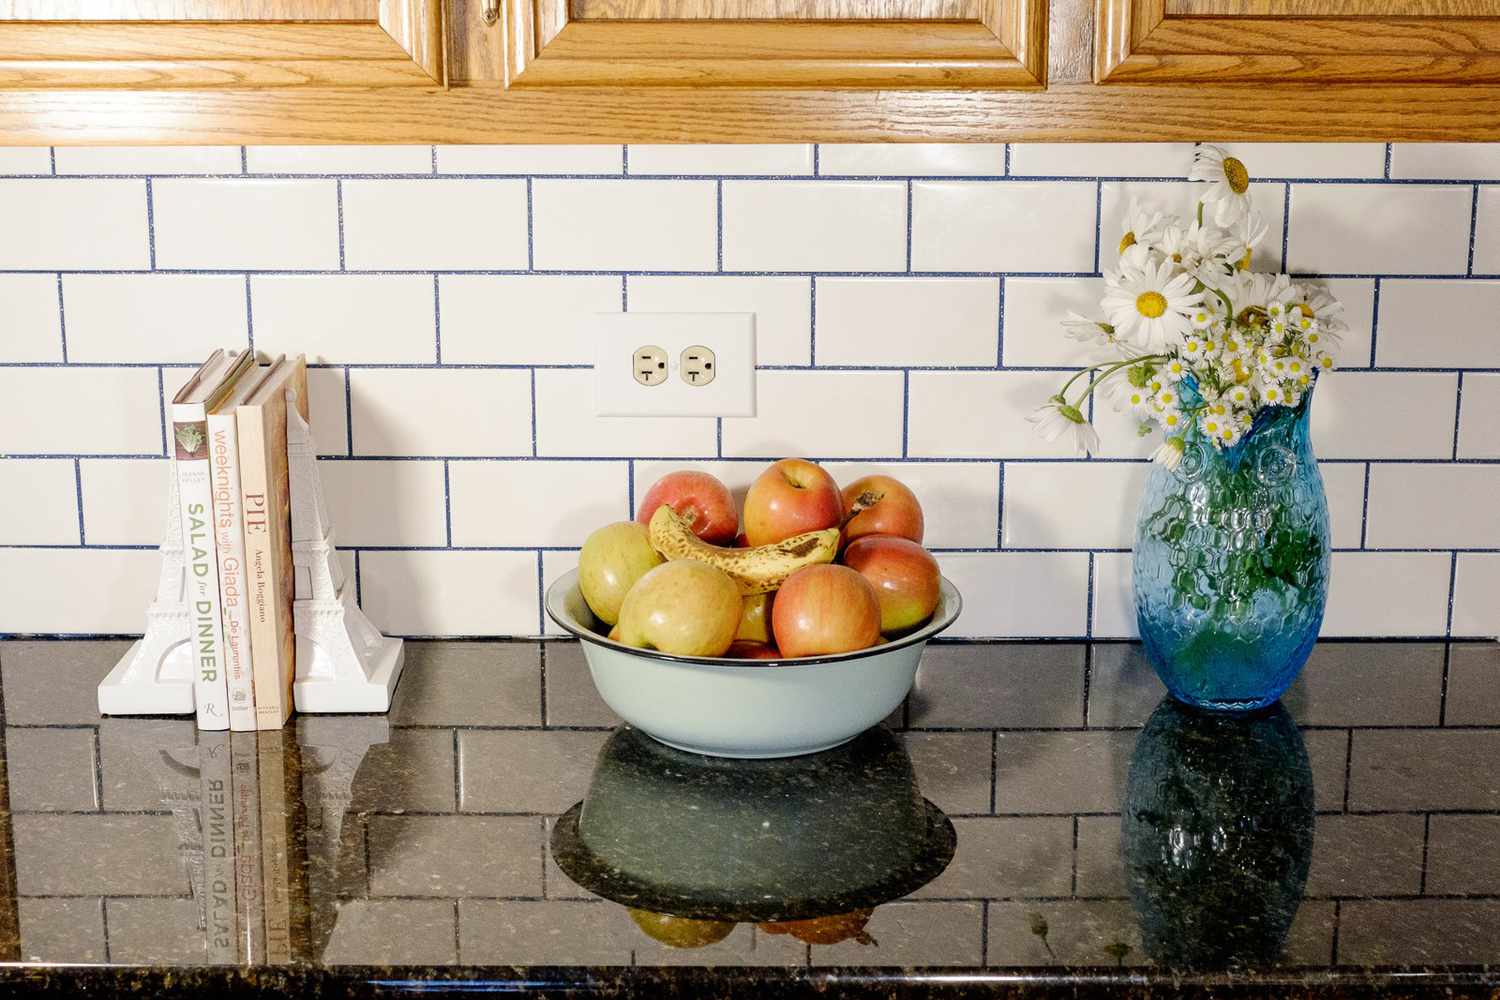 Livros, vaso de flores e fruteira no balcão da cozinha com azulejo de metrô branco e rejunte azul brilhante